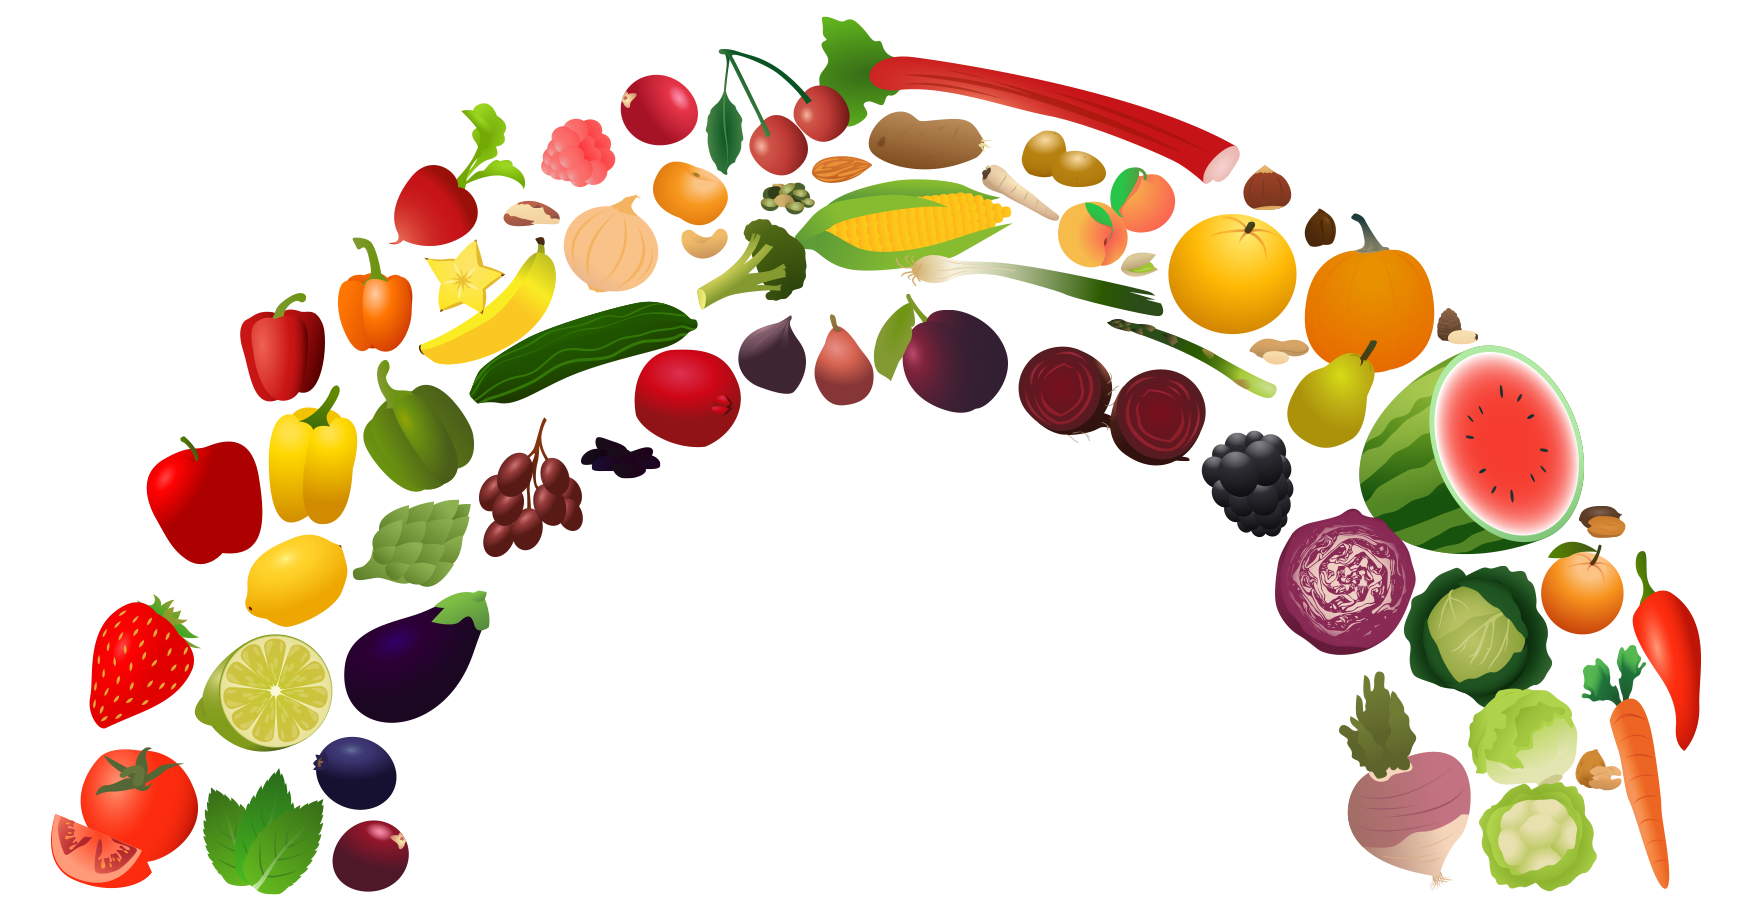 Health food Healthy diet Nutr